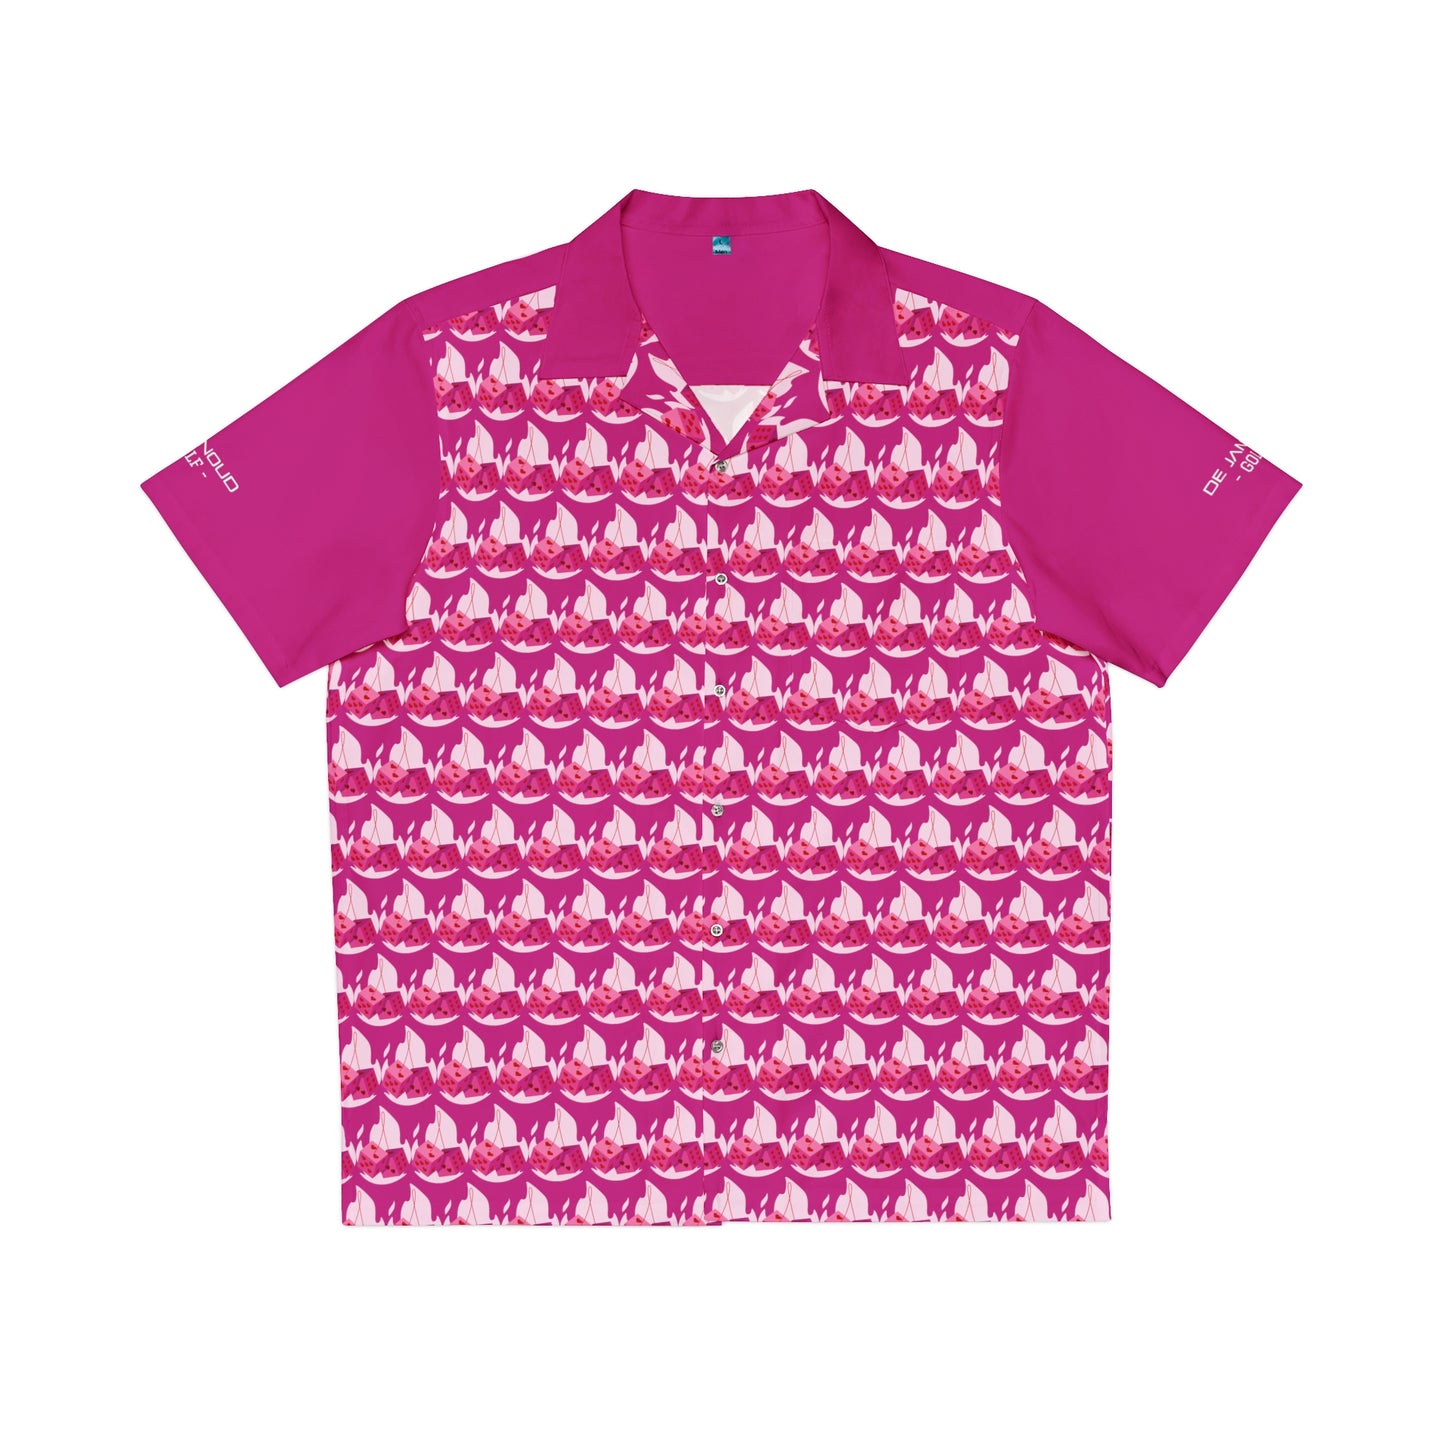 Fairway Shirt - Cherry Dice pink